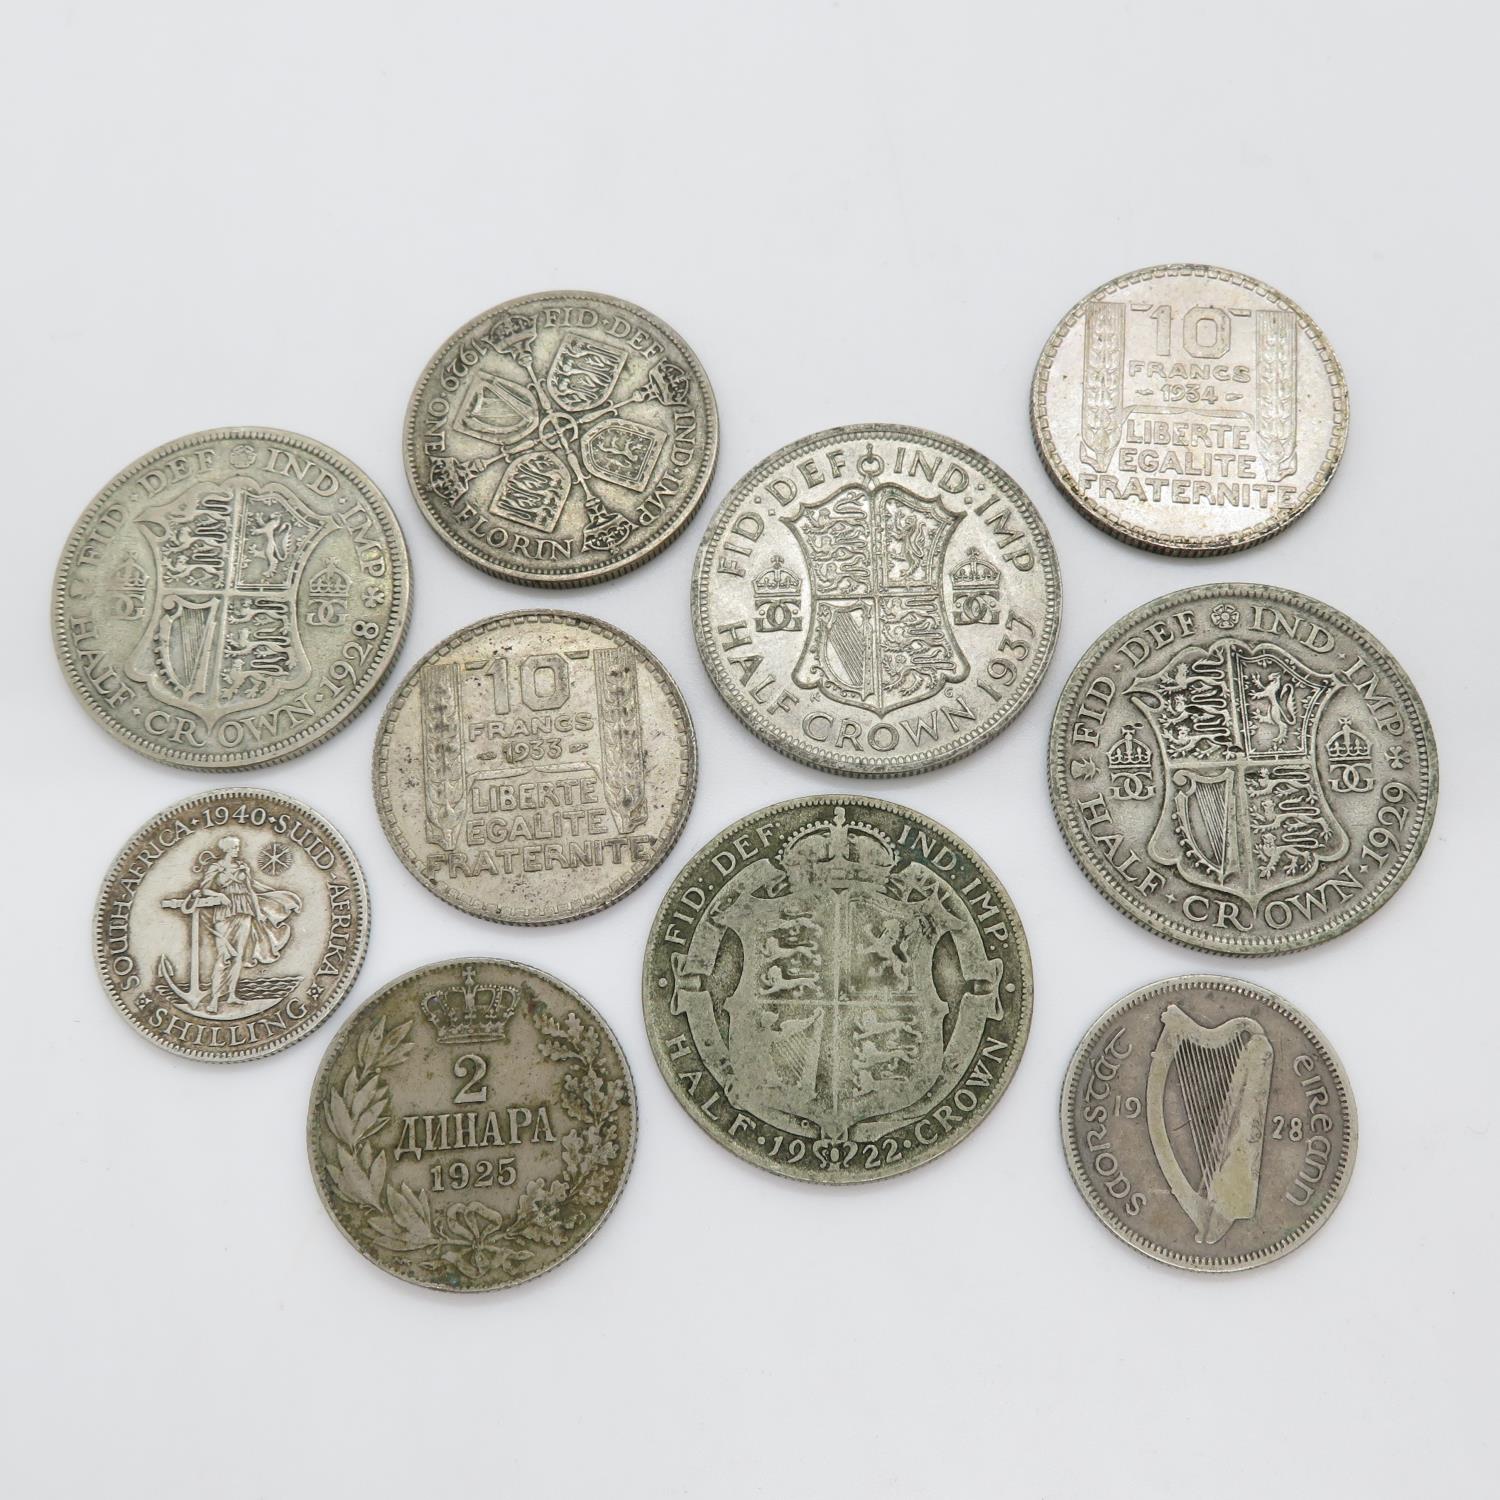 Pre 1947 coins 108g